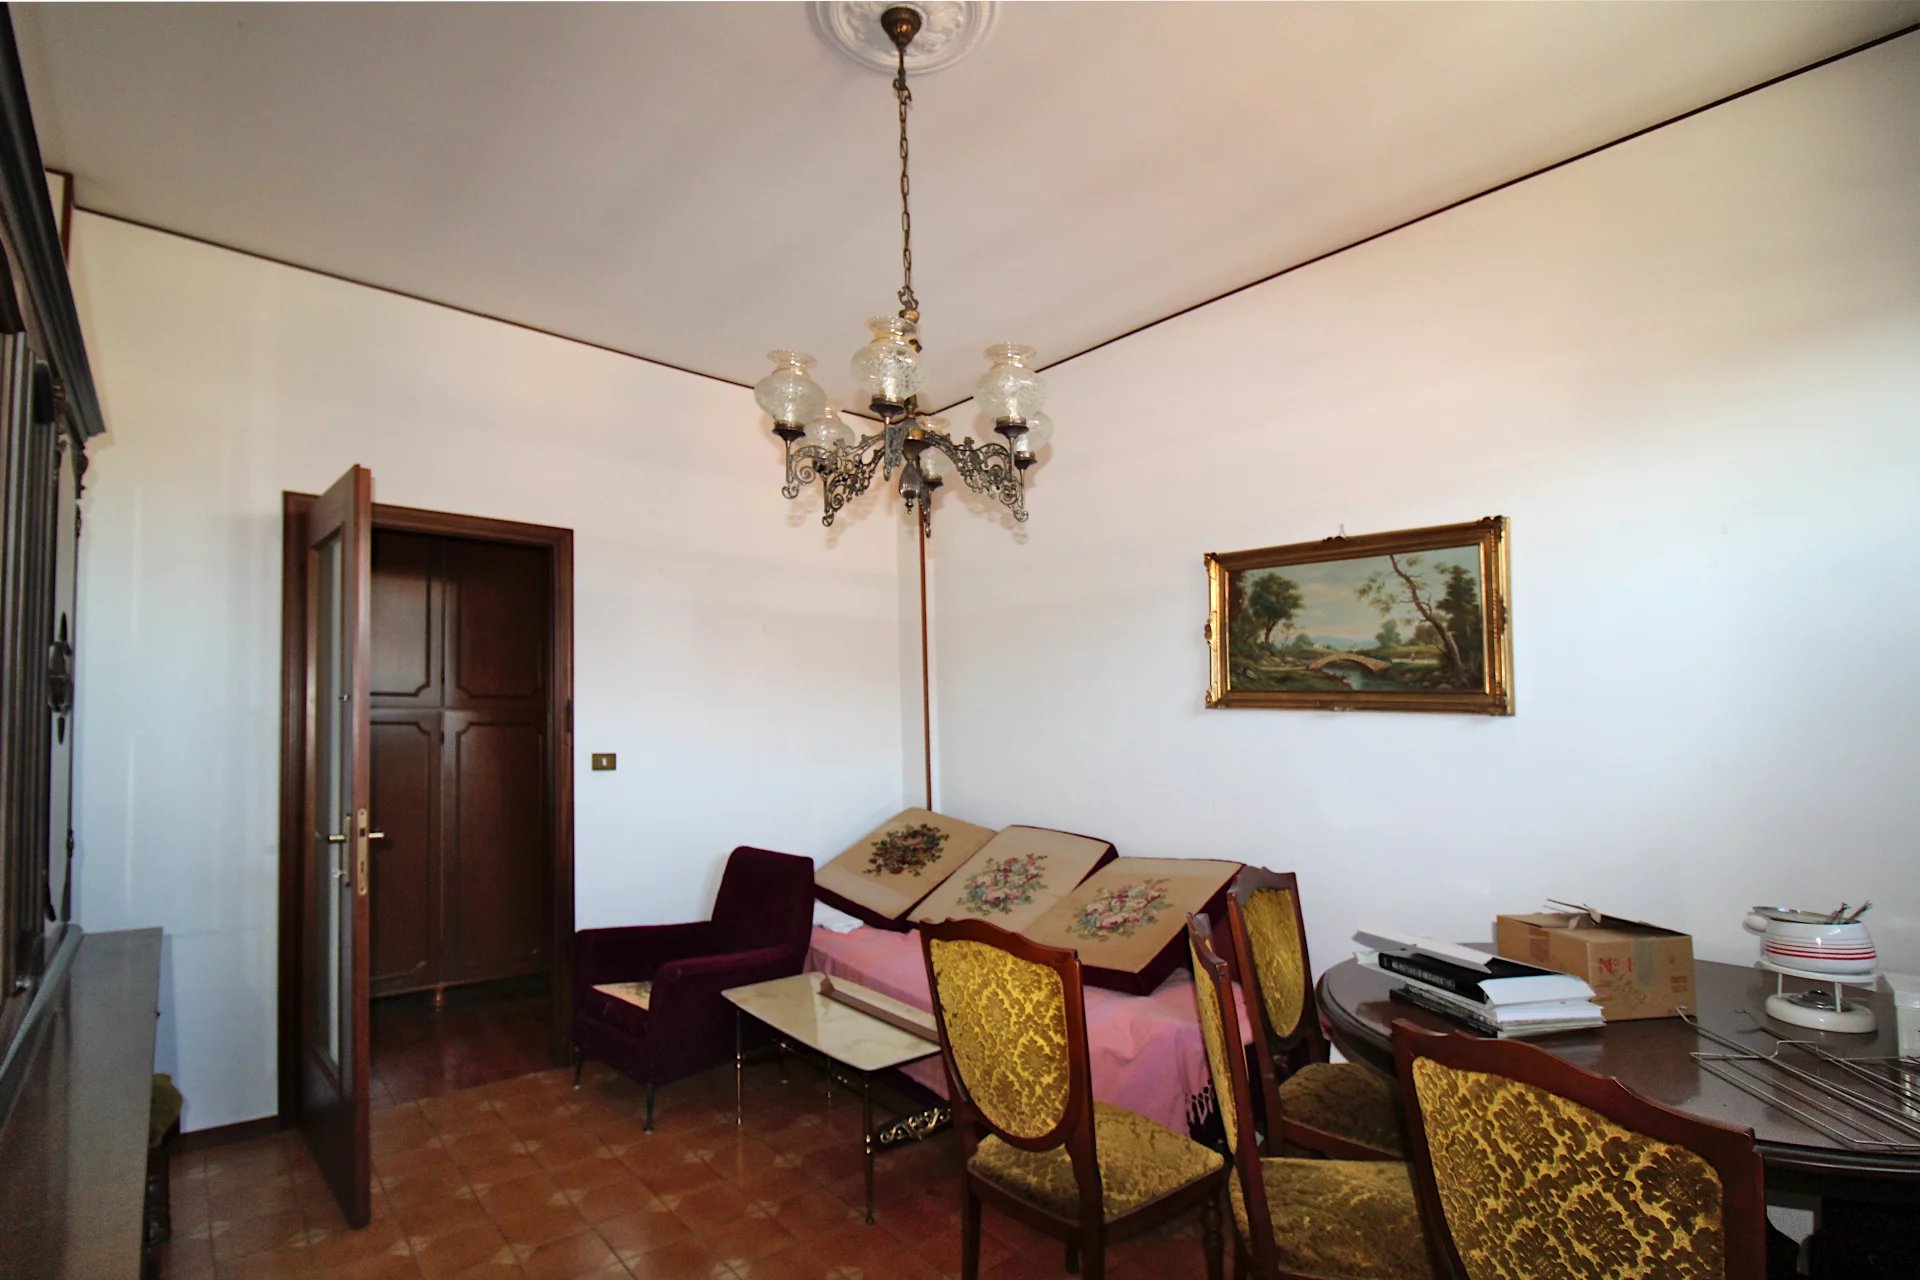 Affascinante appartamento nel cuore di San Damiano d'Asti con cantina e box auto